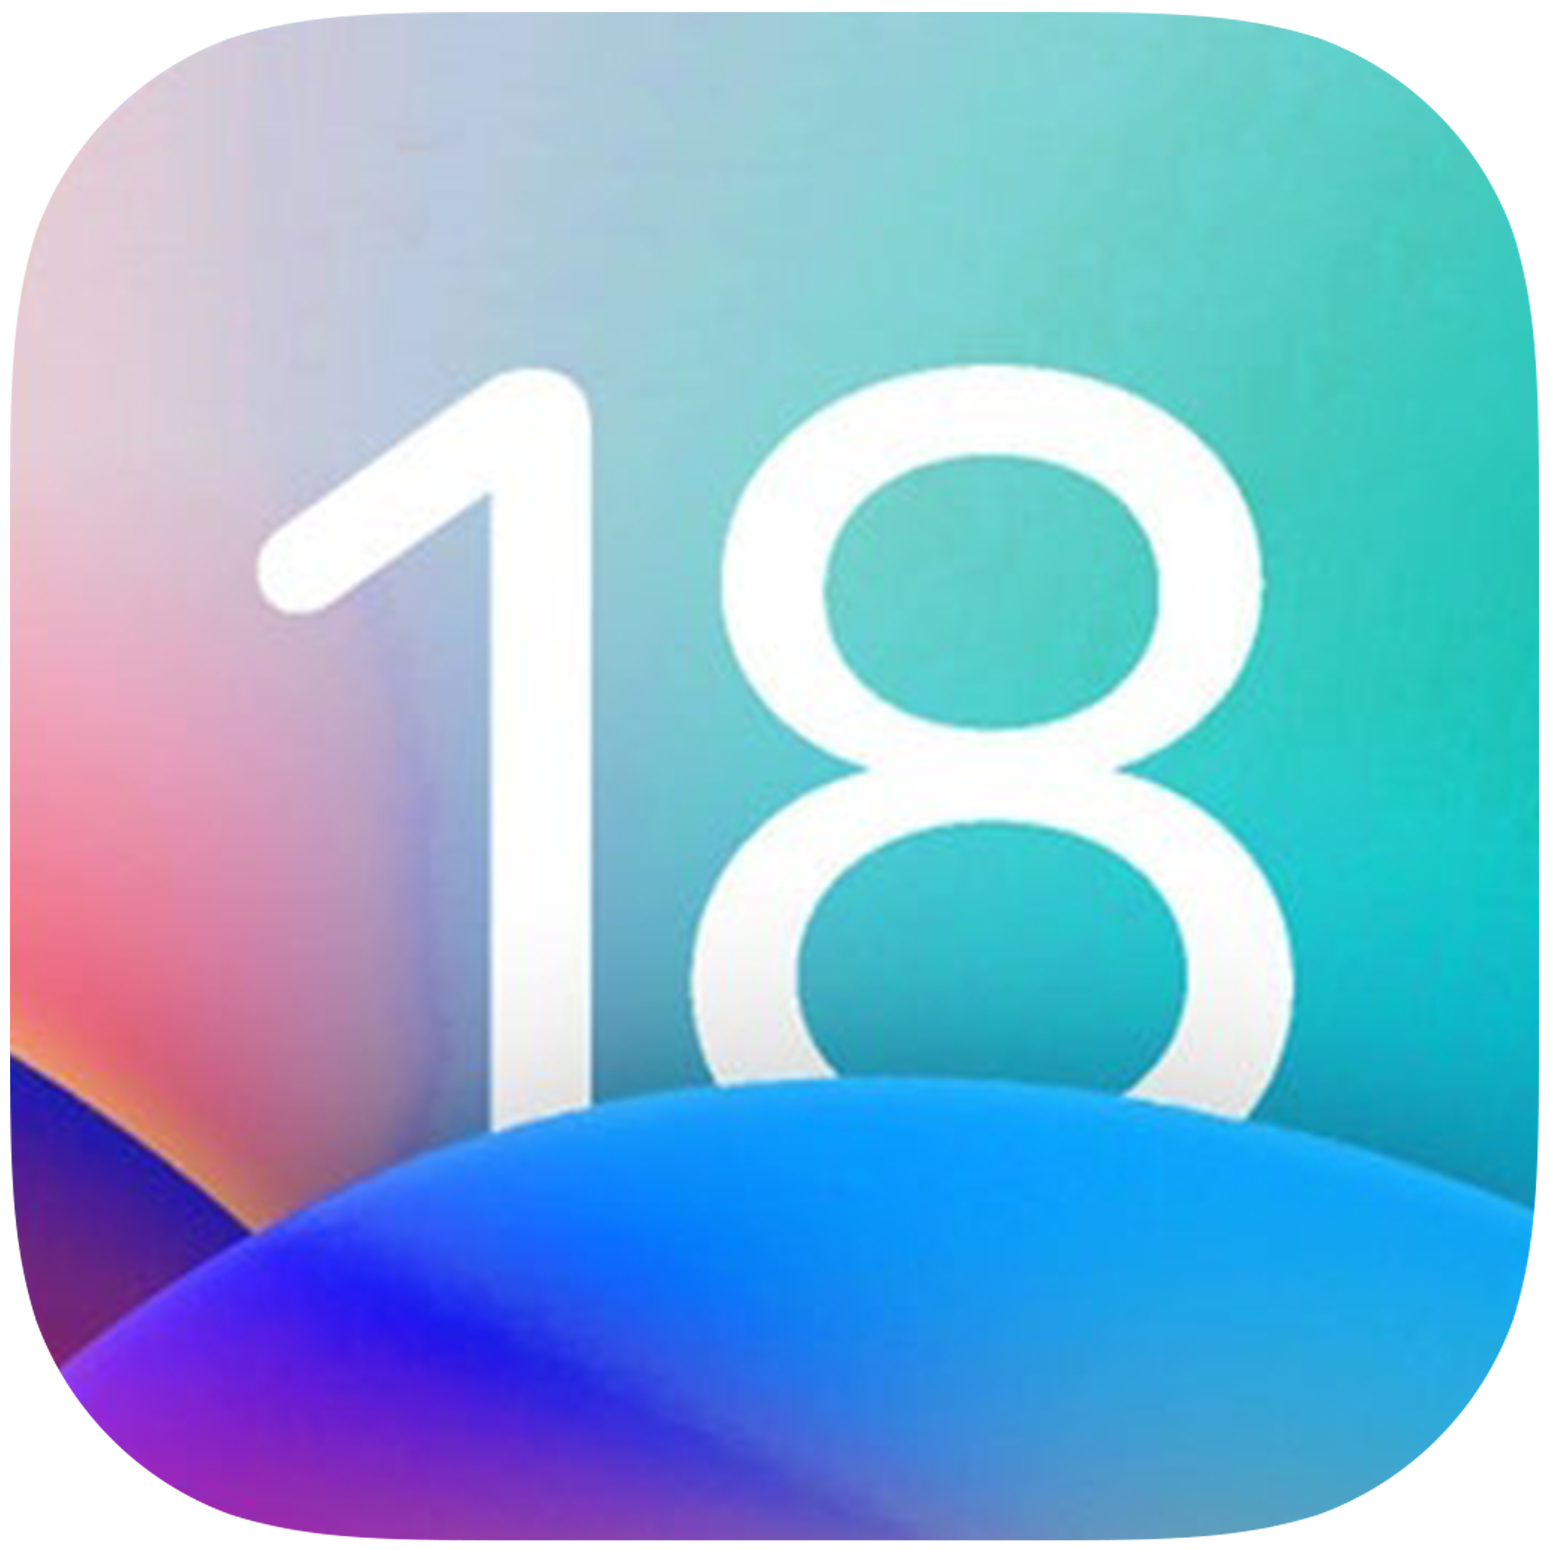 Overzicht van alle apparaten die mogelijk iOS 18 en iPadOS 18 ondersteunen